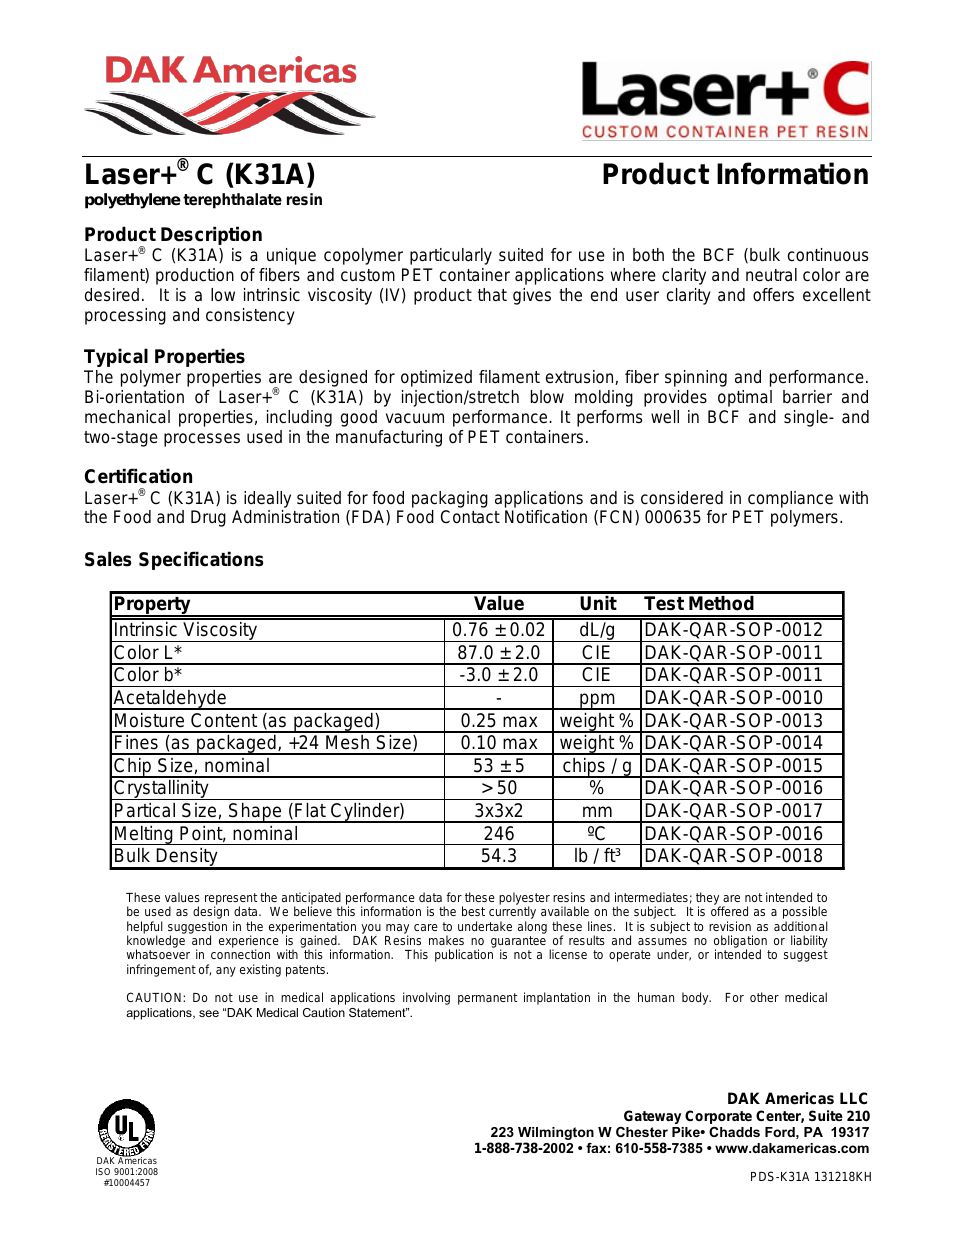 Laser+ C K31A